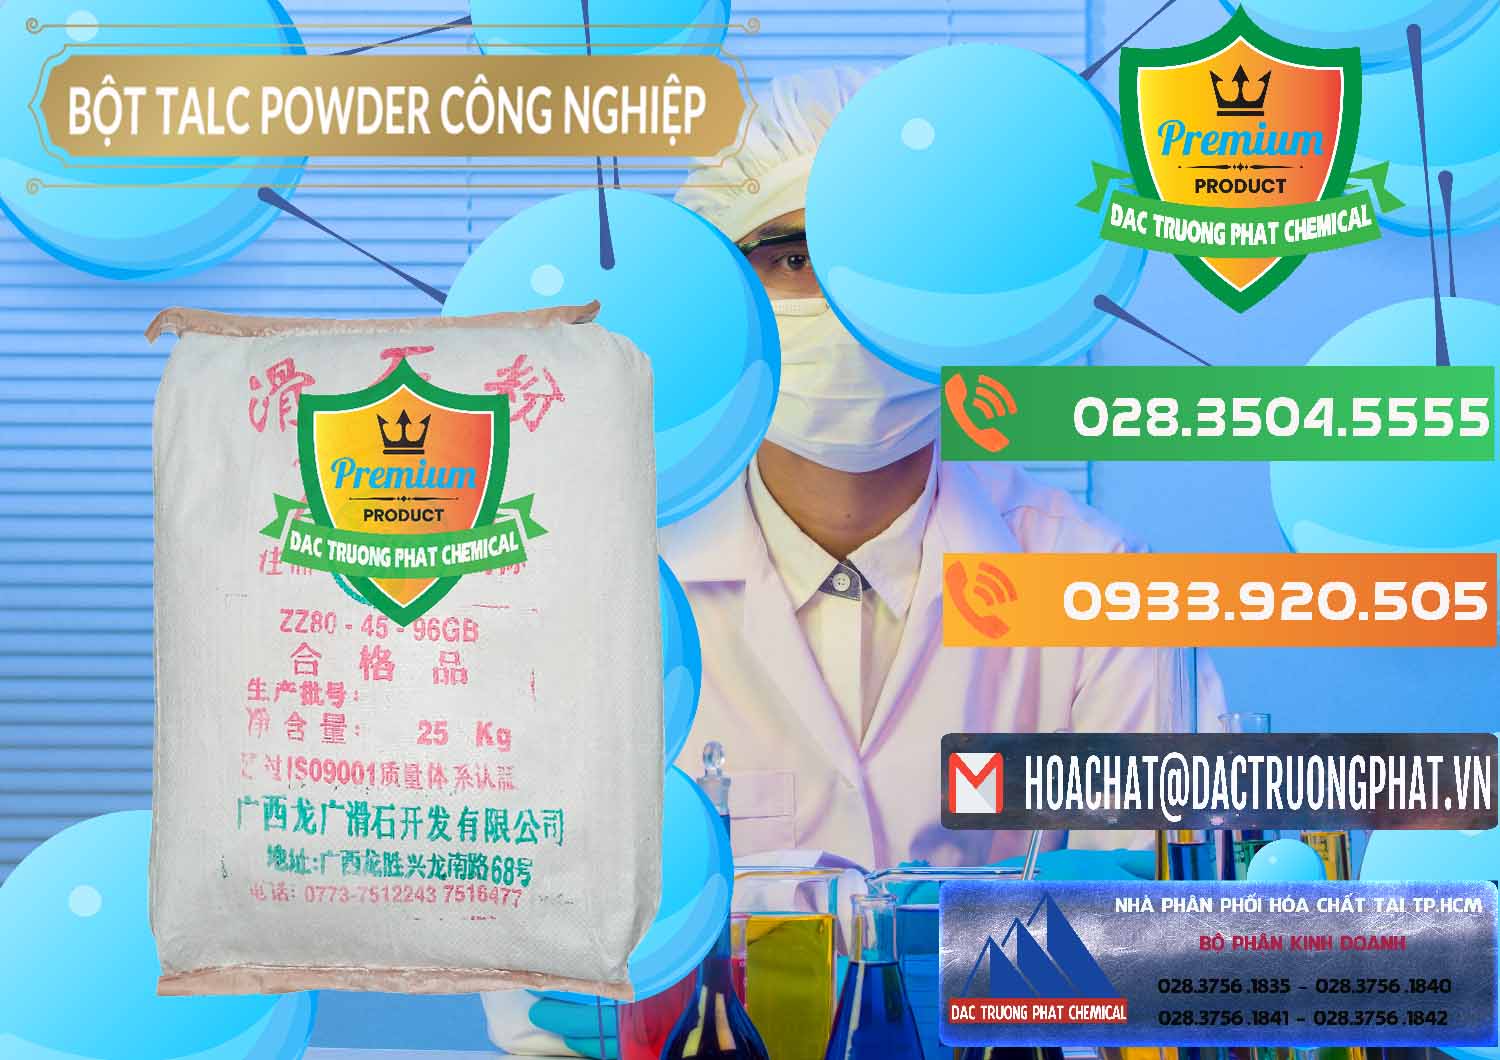 Cty bán _ cung ứng Bột Talc Powder Công Nghiệp Trung Quốc China - 0037 - Đơn vị chuyên cung cấp _ bán hóa chất tại TP.HCM - hoachatxulynuoc.com.vn